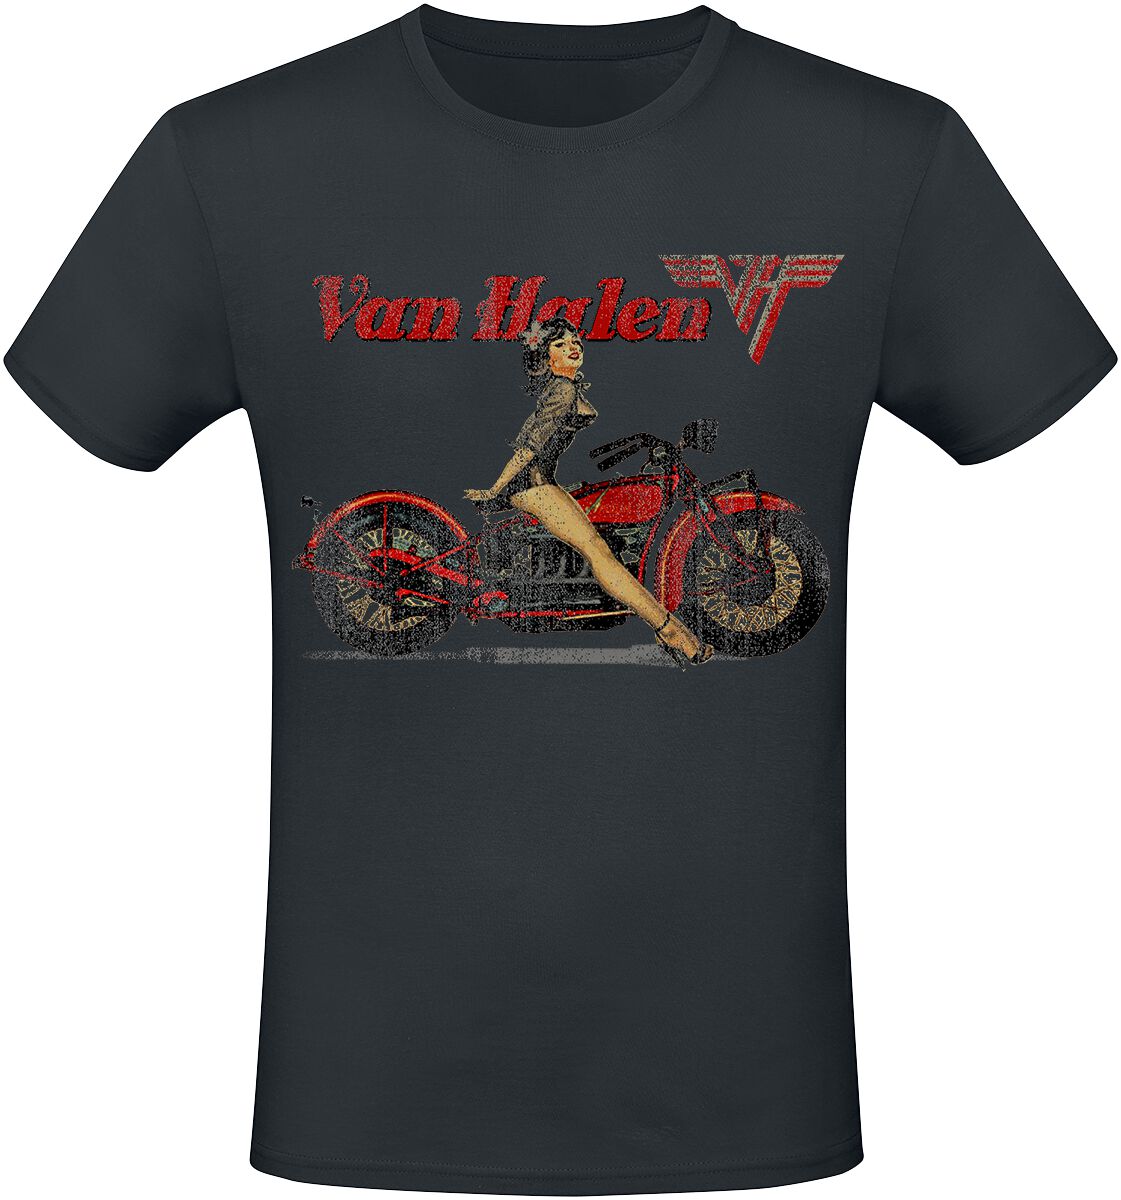 Van Halen T-Shirt - Pinup Motorcycle - S bis 3XL - für Männer - Größe XXL - schwarz  - Lizenziertes Merchandise!